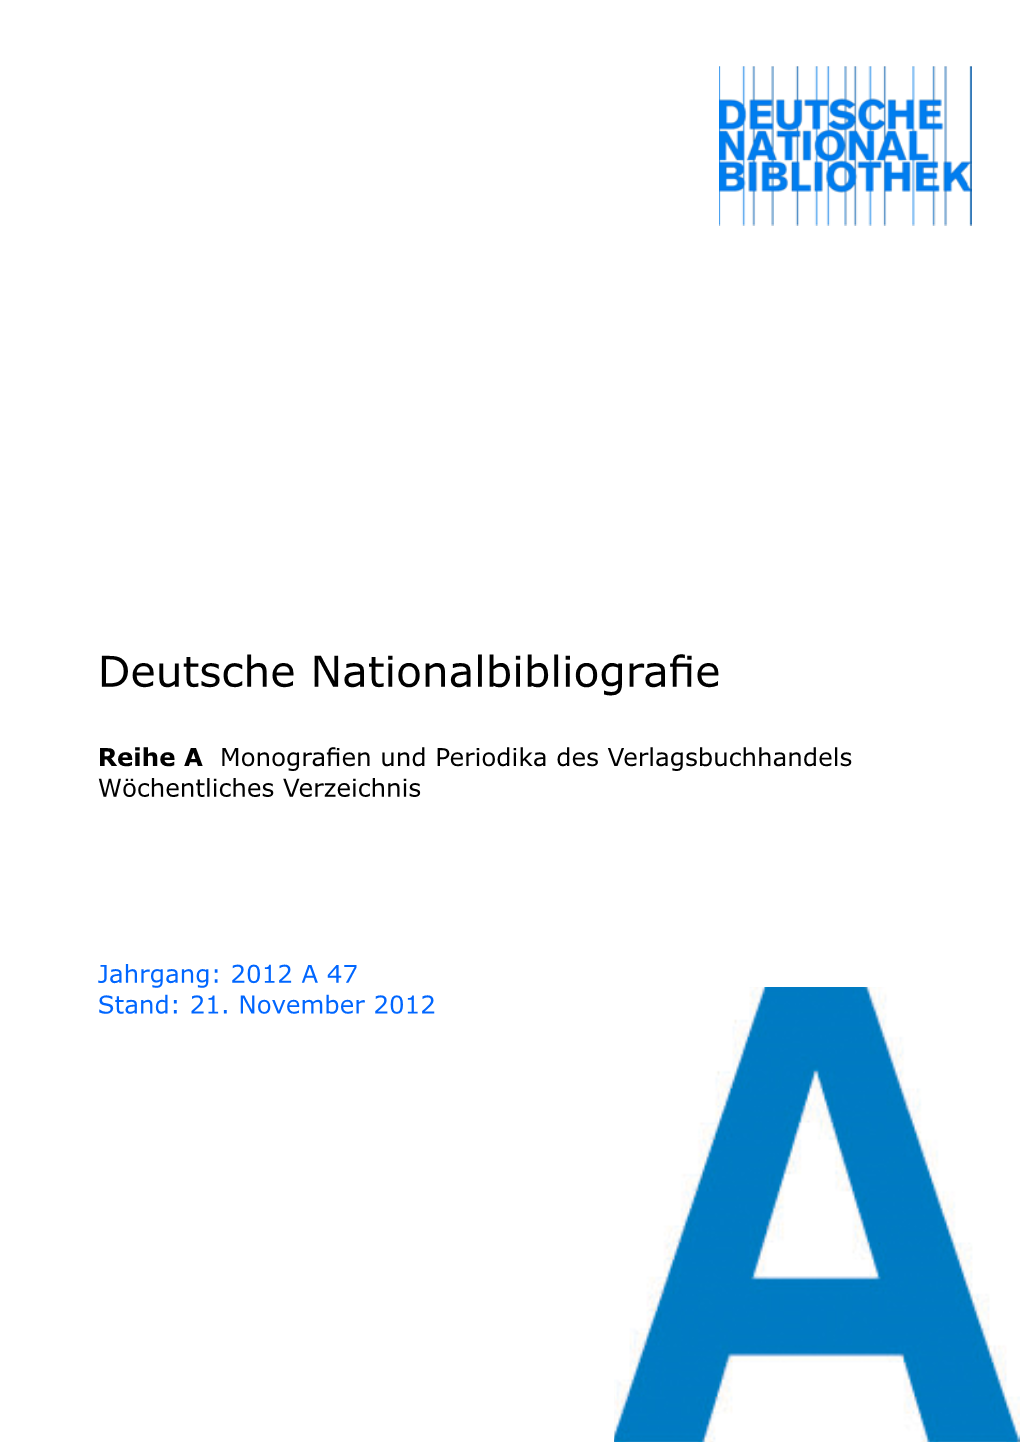 Deutsche Nationalbibliografie 2012 a 47